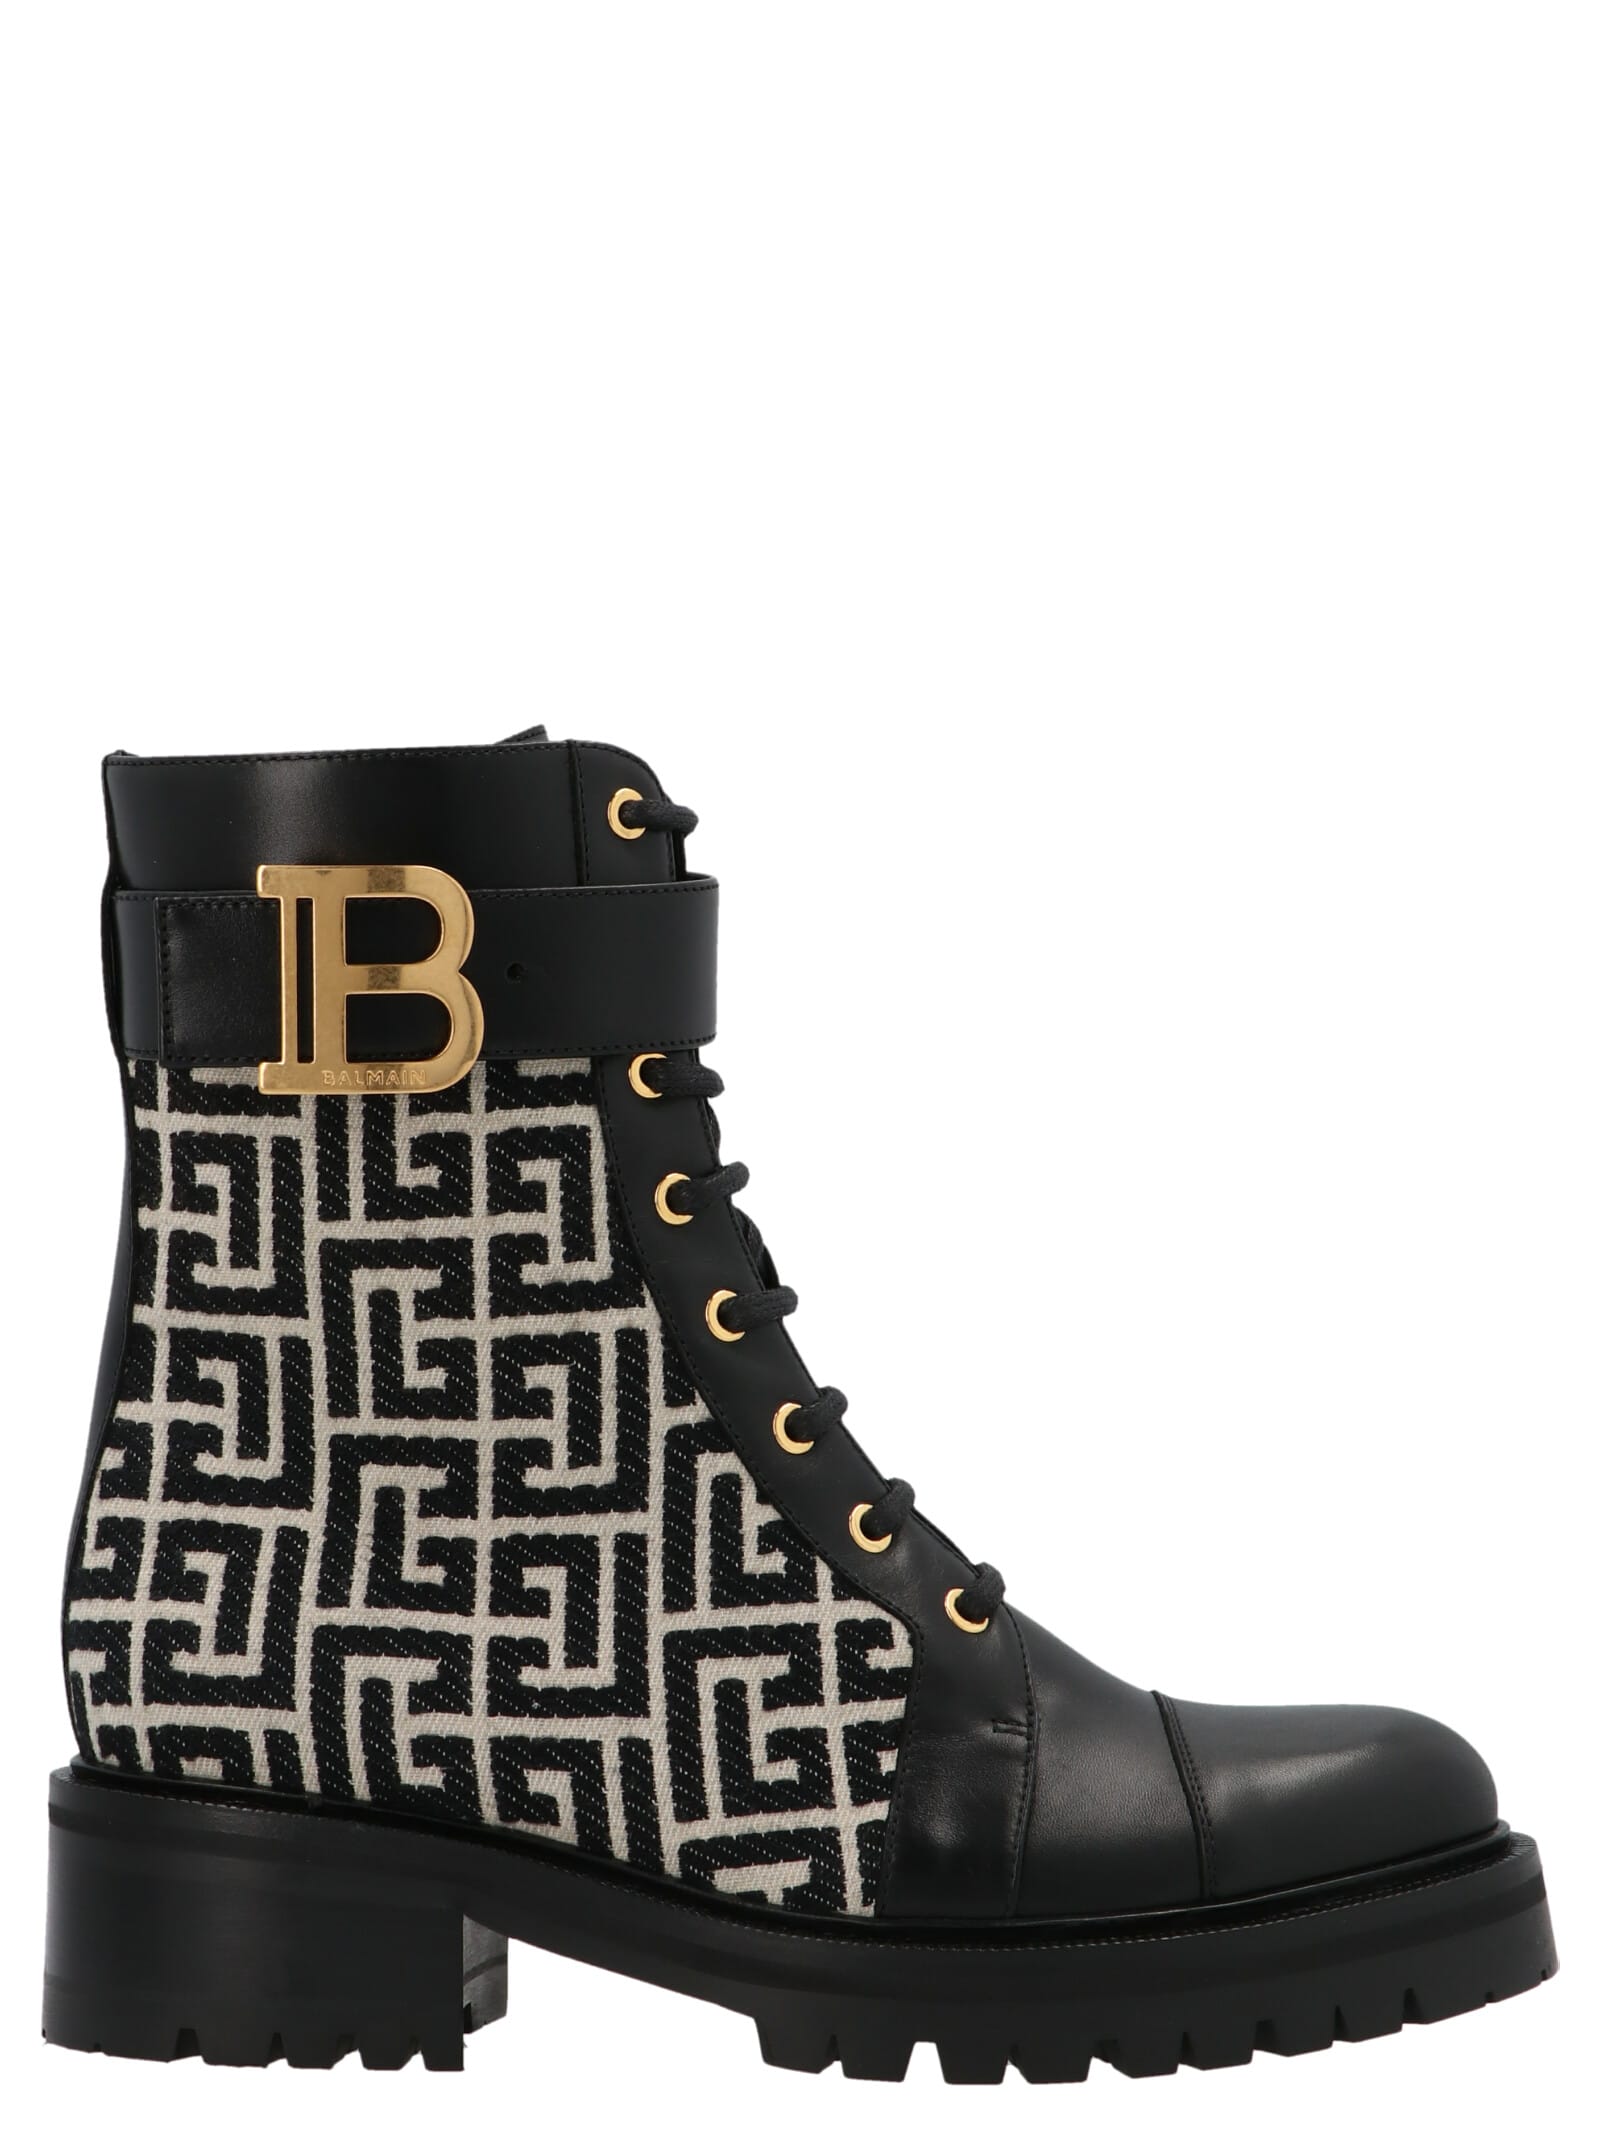 Buy Balmain ranger Boot Shoes online, shop Balmain shoes with free shipping